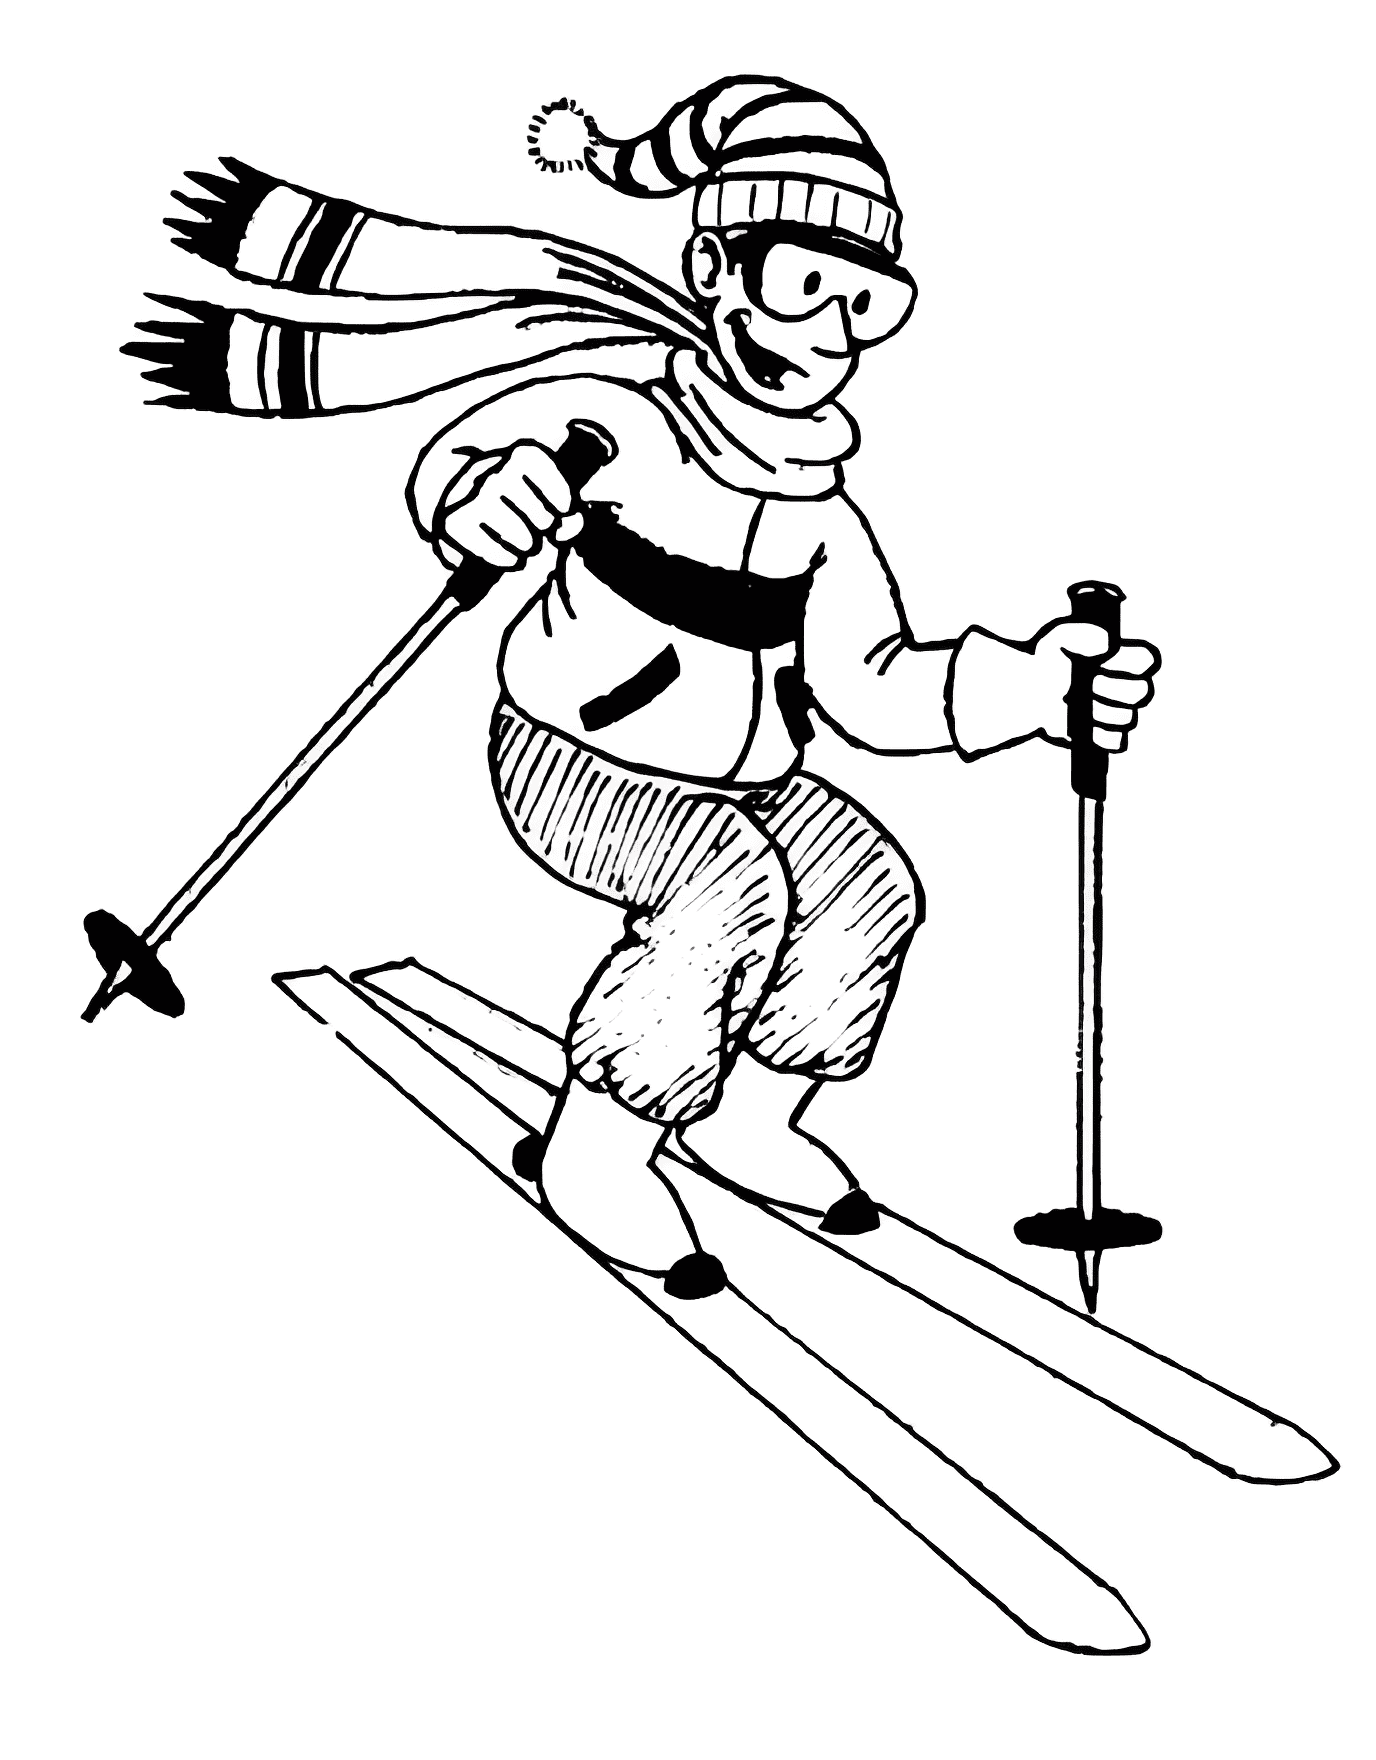 スキー イラスト 白黒 イラスト